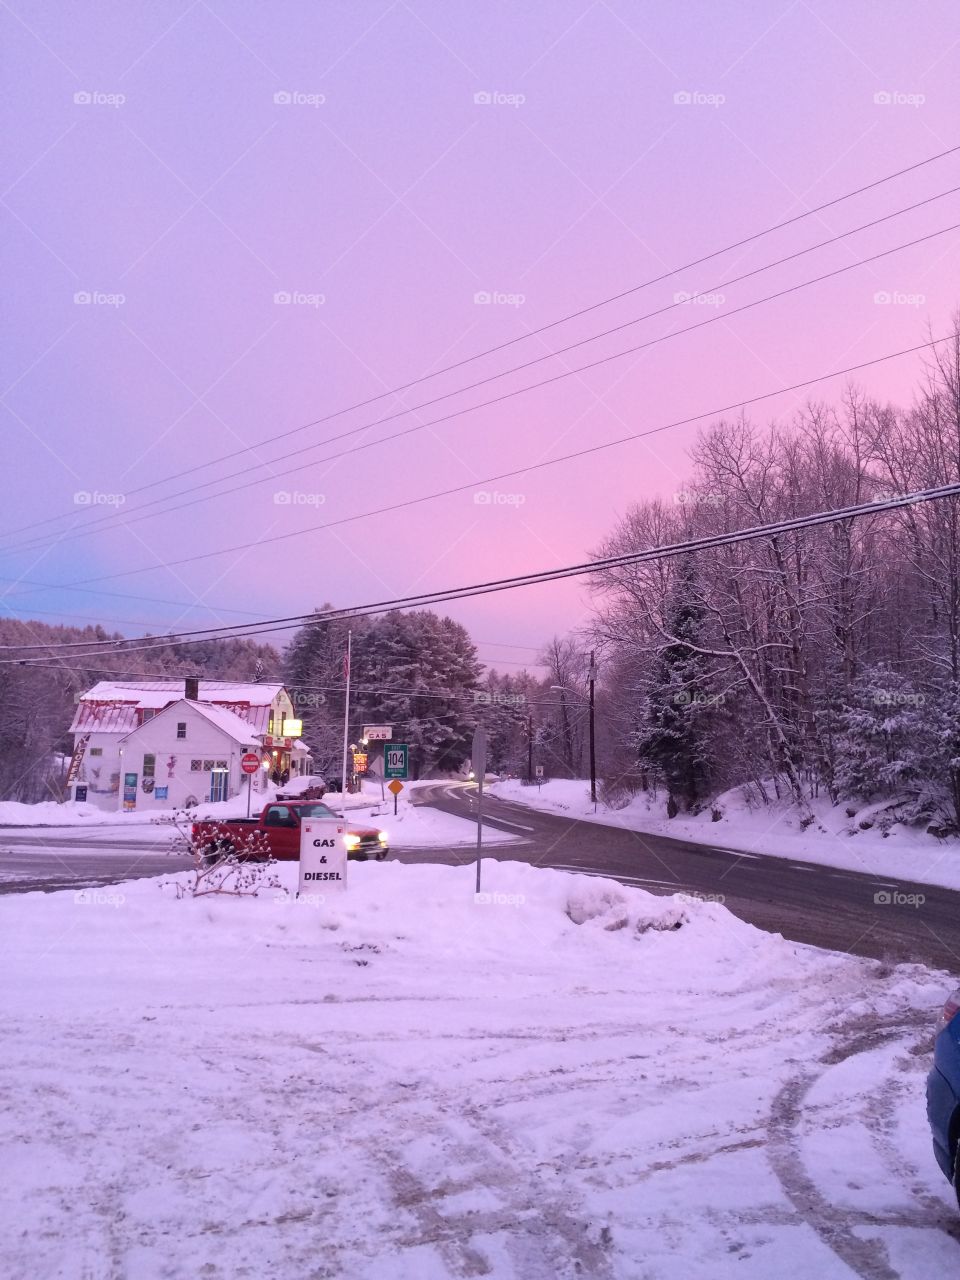 Purple skies in Danbury, NH